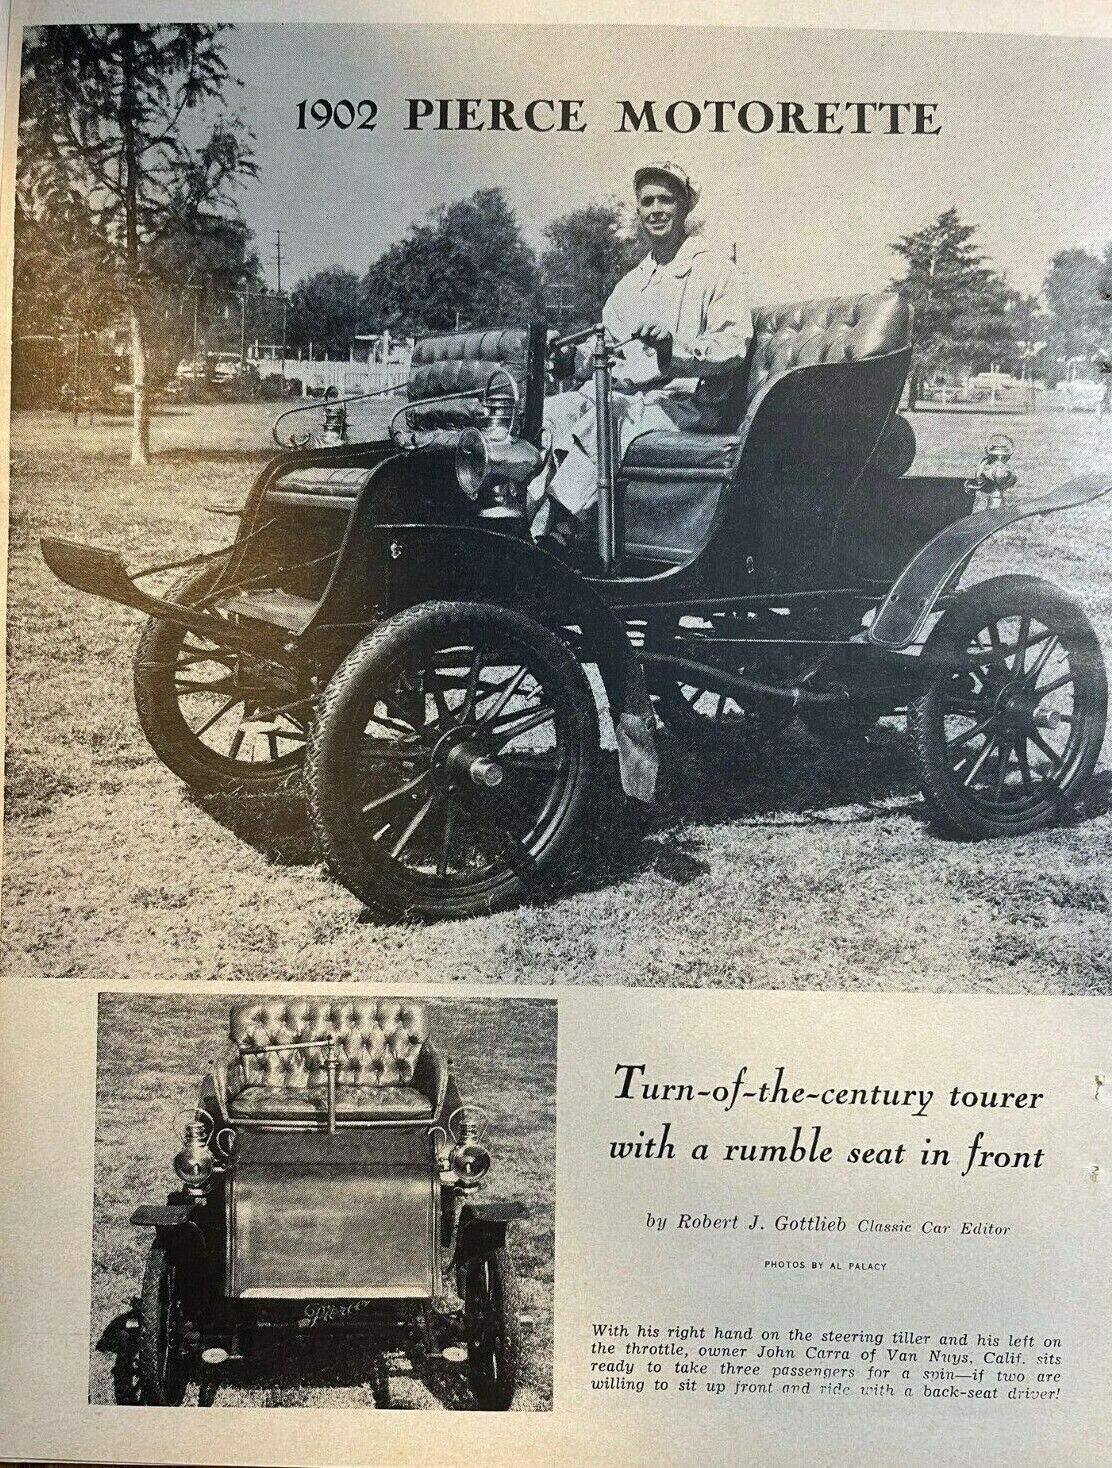 1902 Pierce Motorette illustrated